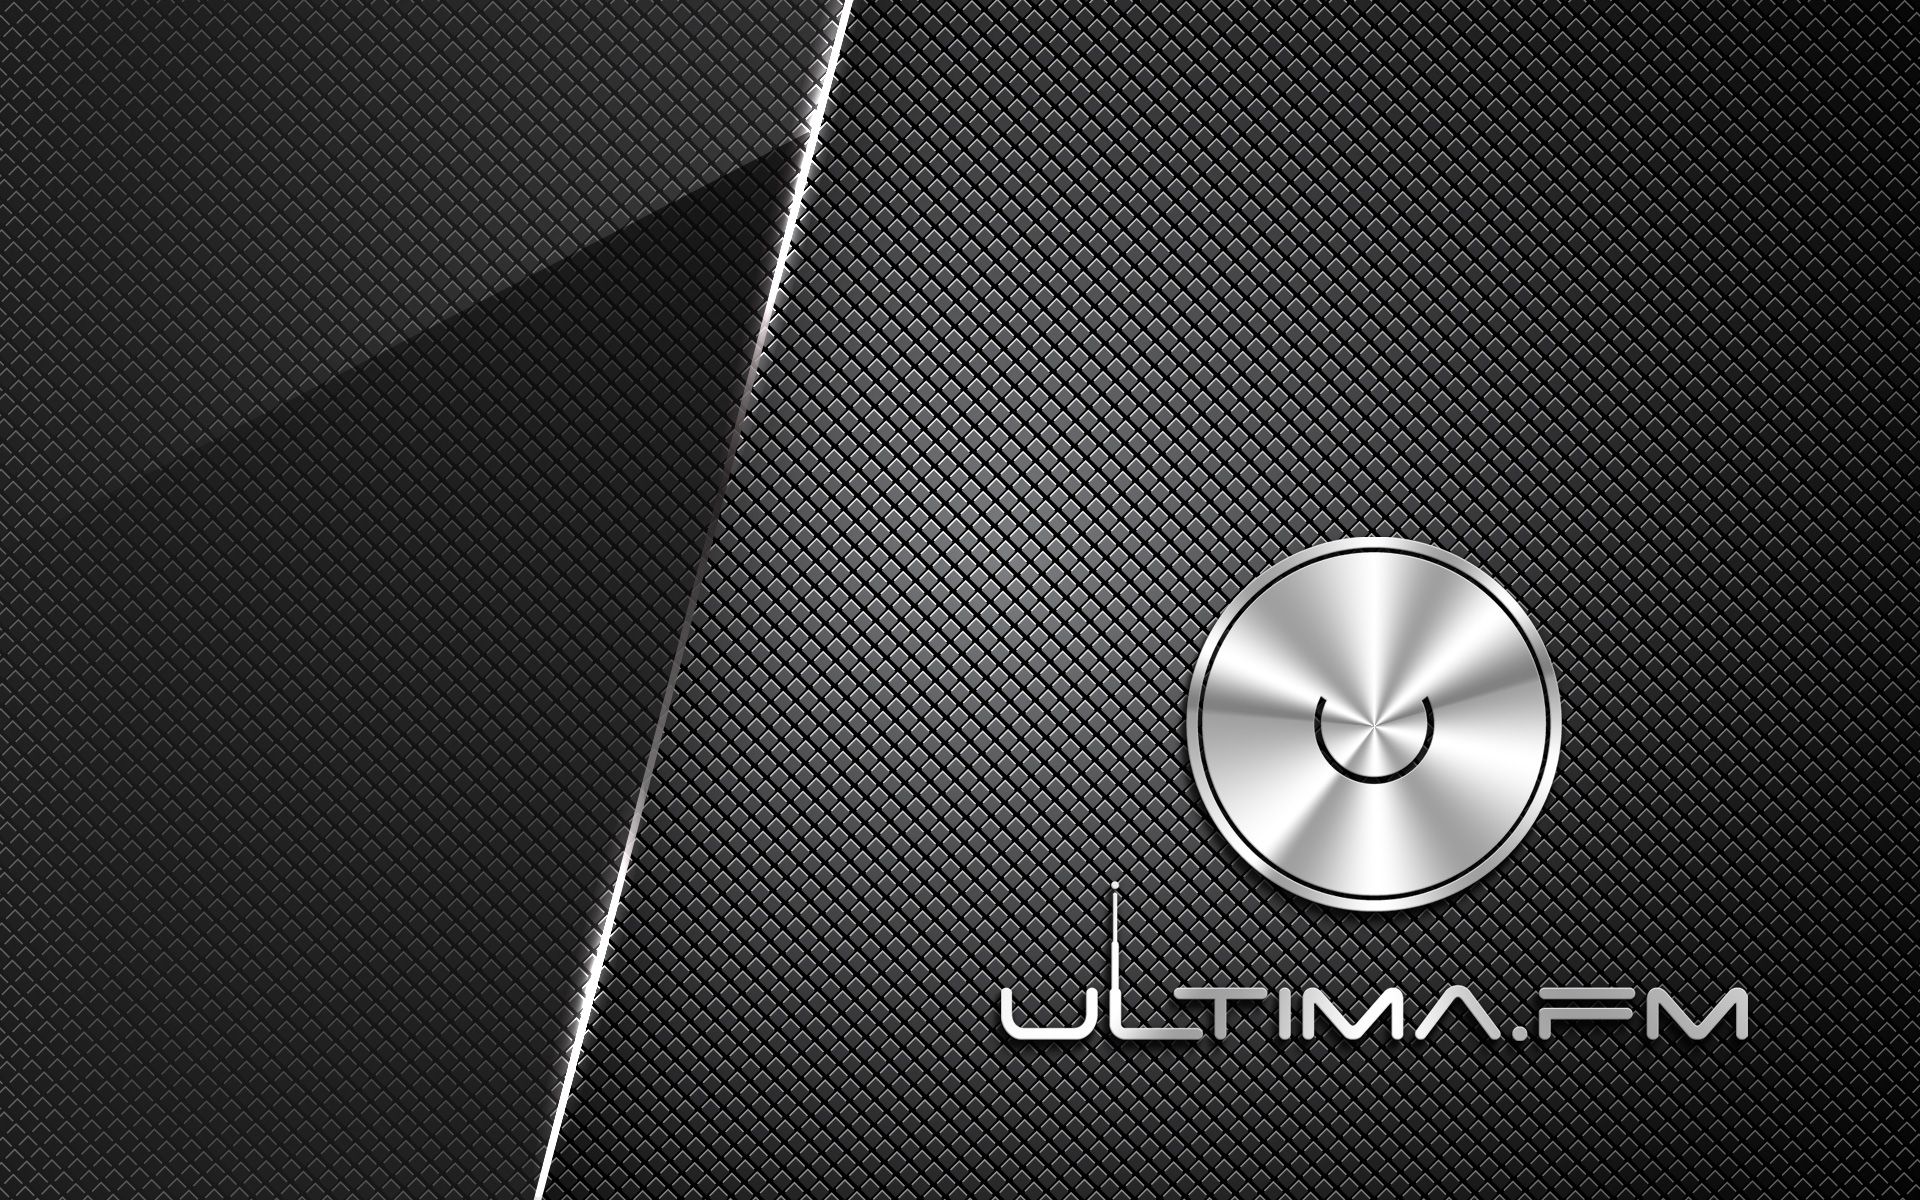 Лого и фирменный стиль для Радио Ультима (Ultima.fm) - дизайнер Advokat72